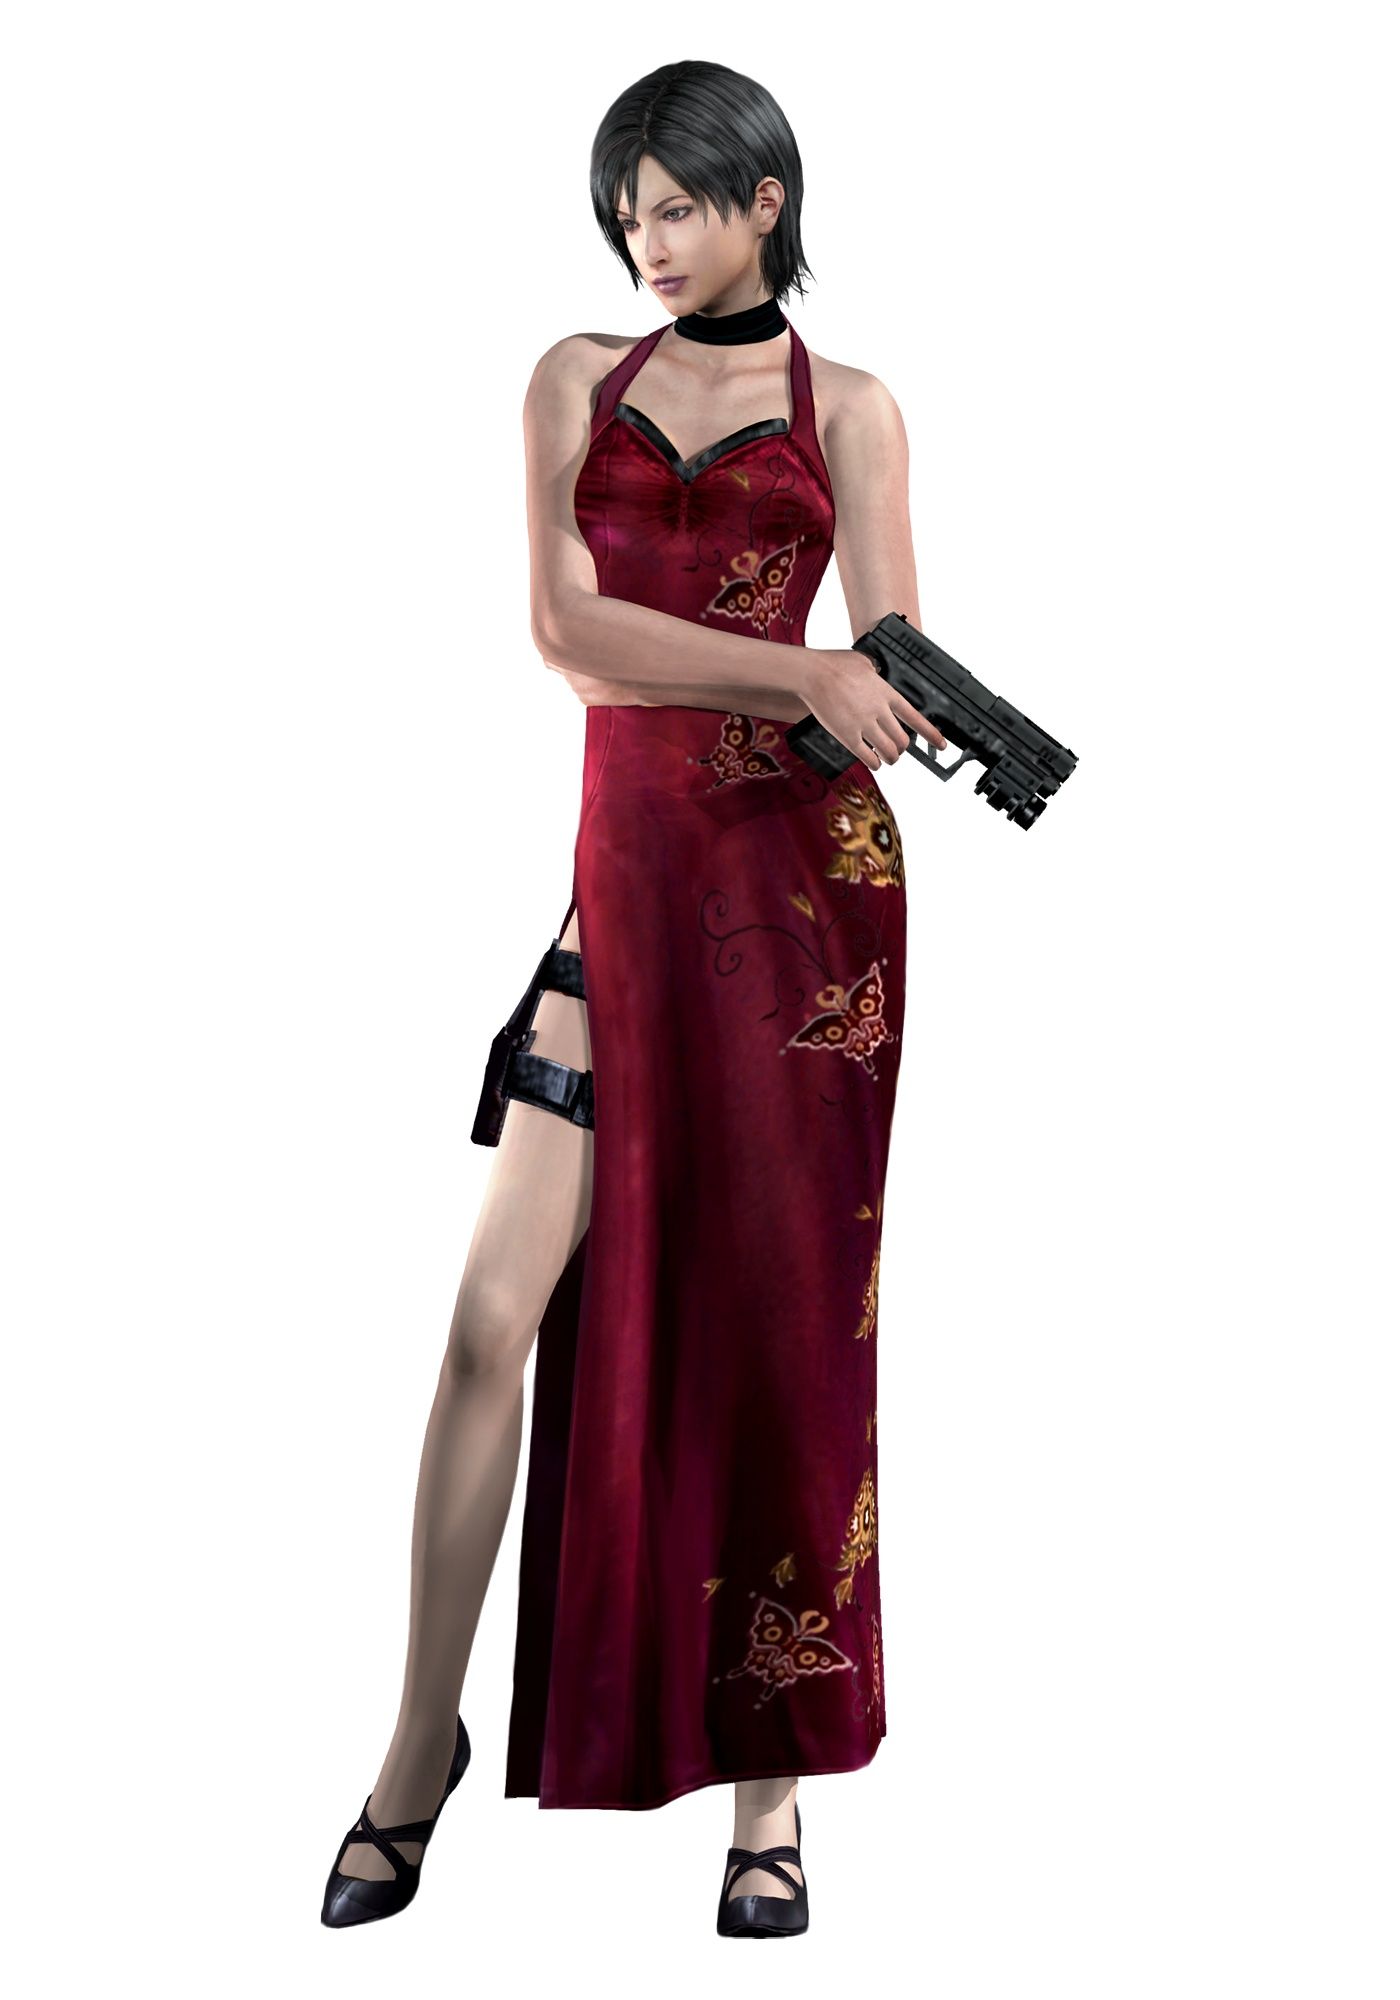 Resident Evil Ada Wong Video Games Resident Evil HD Resident Evil 4